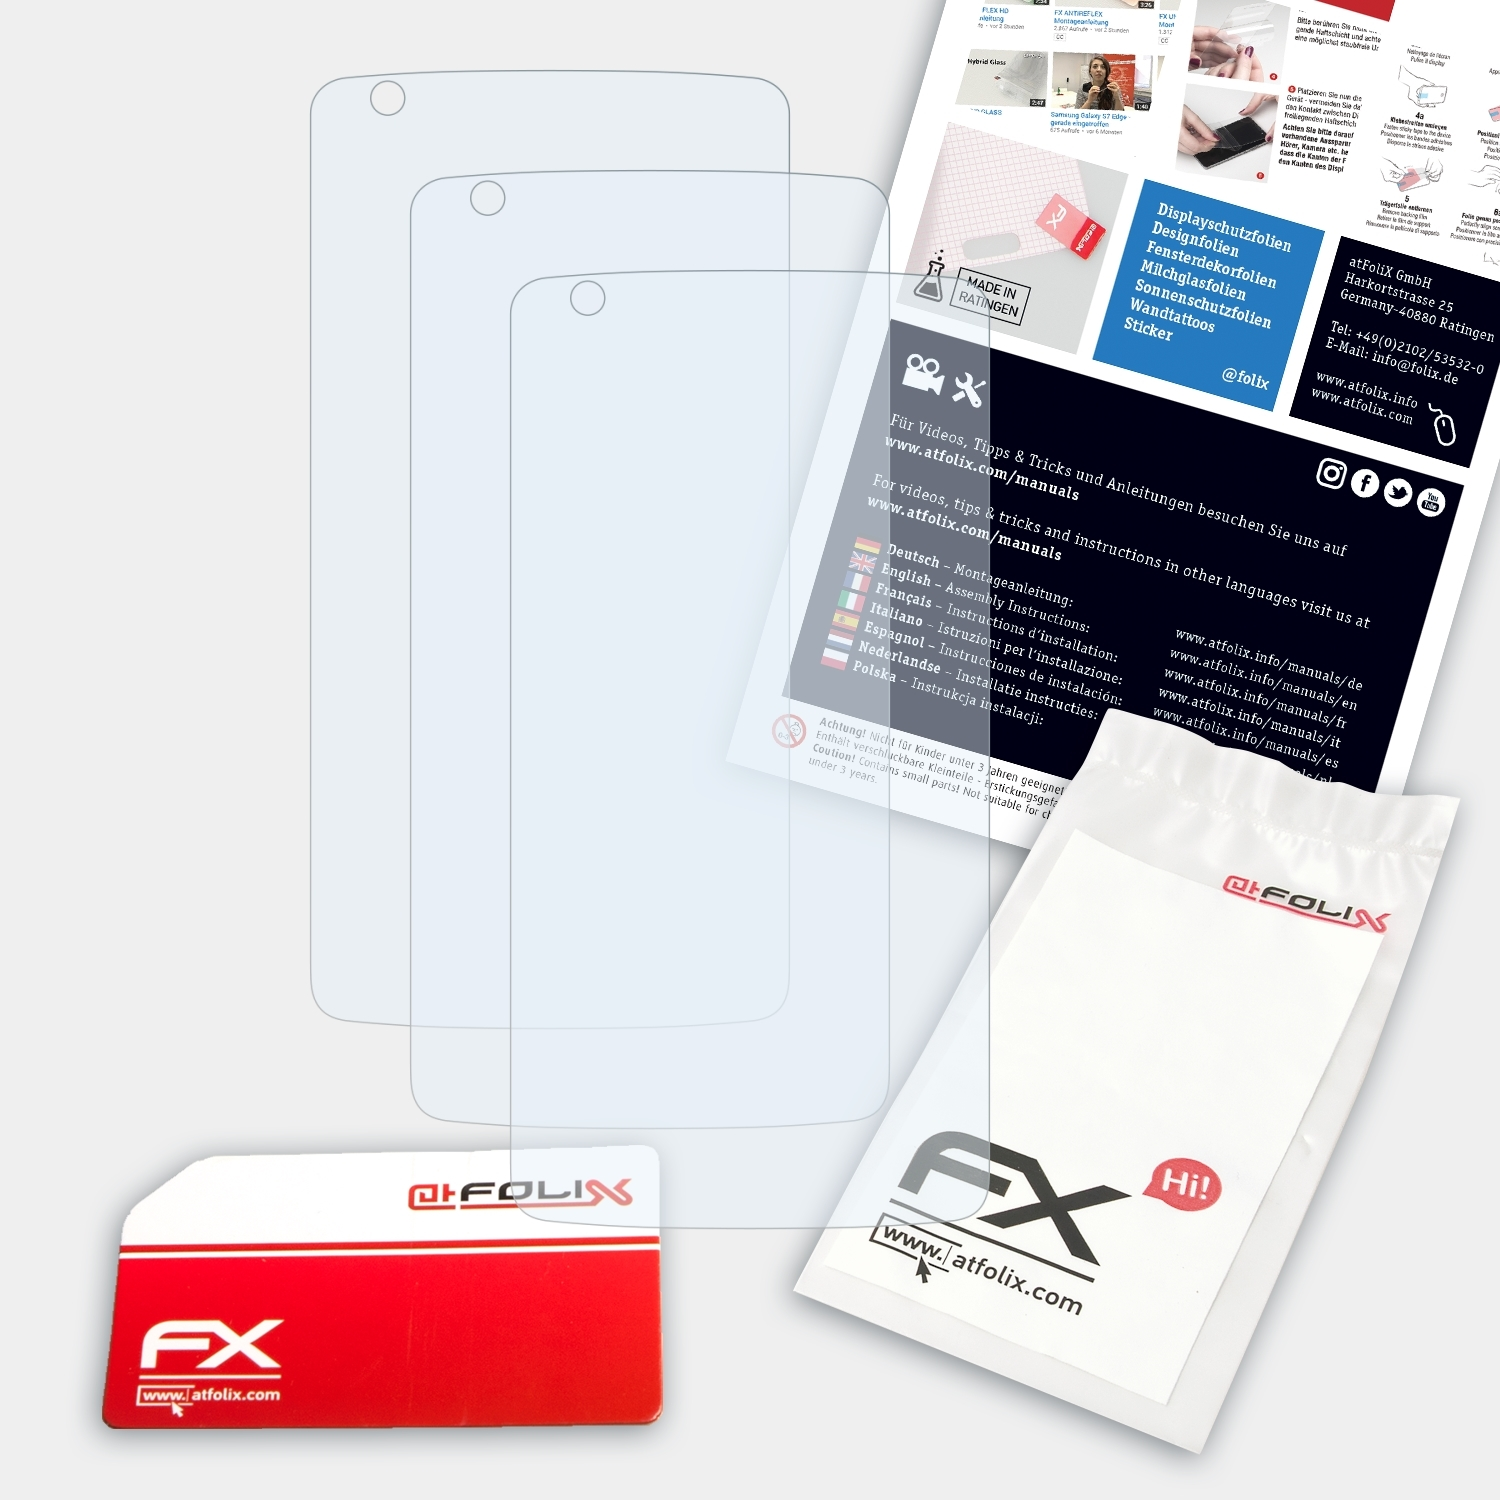 ATFOLIX Axon 3x ZTE Displayschutz(für Mini) FX-Clear